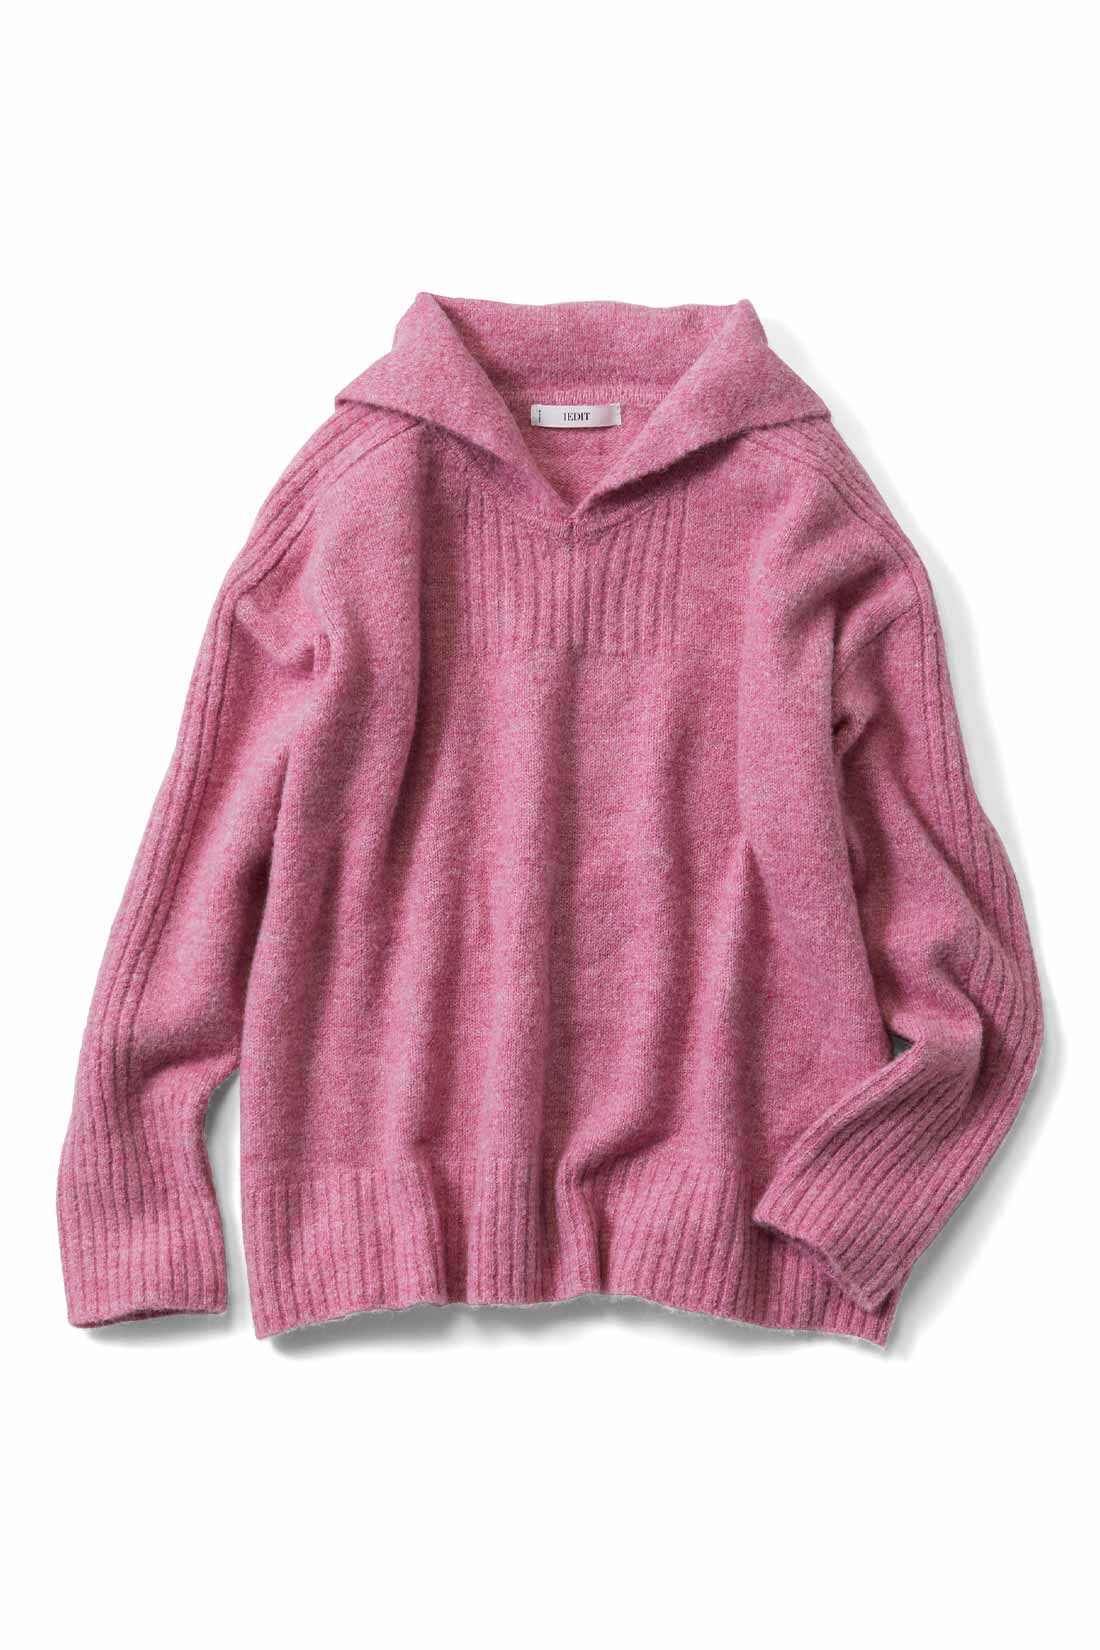 IEDIT|IEDIT[イディット]　マシンウォッシャブルのウール混素材がうれしい 編み柄がアクセントになったセーラーカラーニット〈ピンク〉|〈ピンク〉